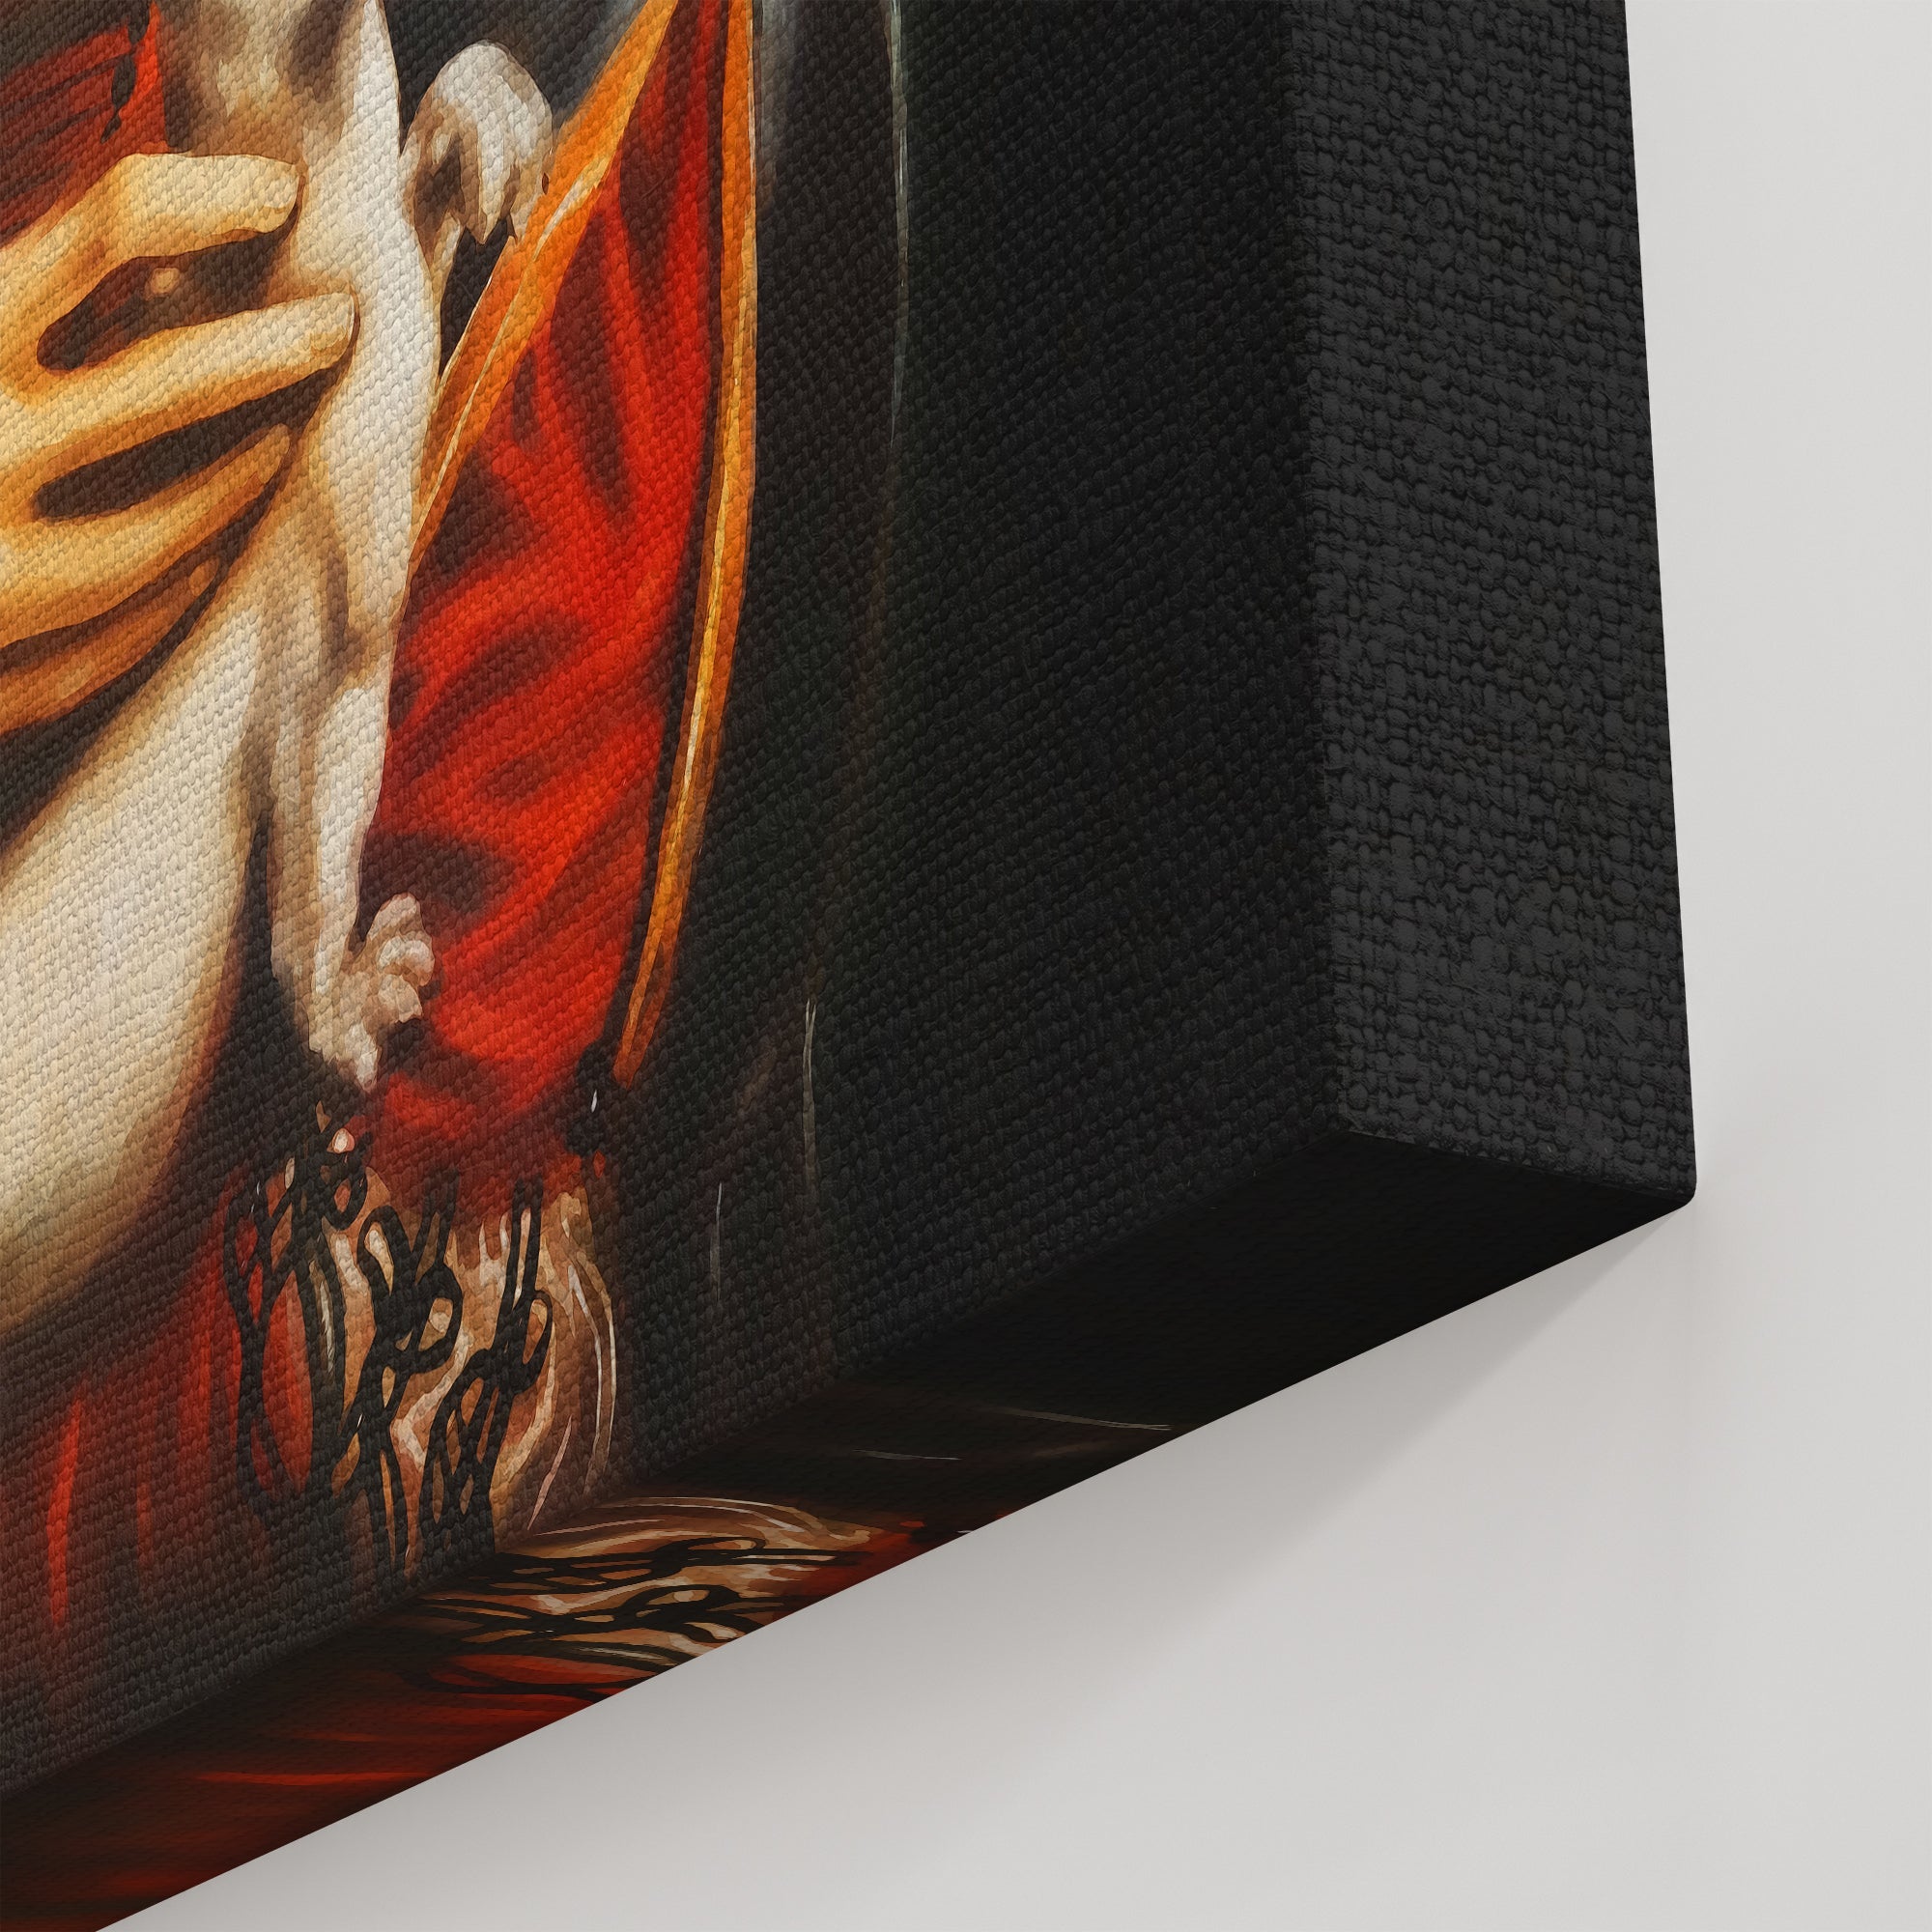 Foto obraz na płótnie - Dama z łasiczką (Leonardo da Vinci) - Gallart.pl